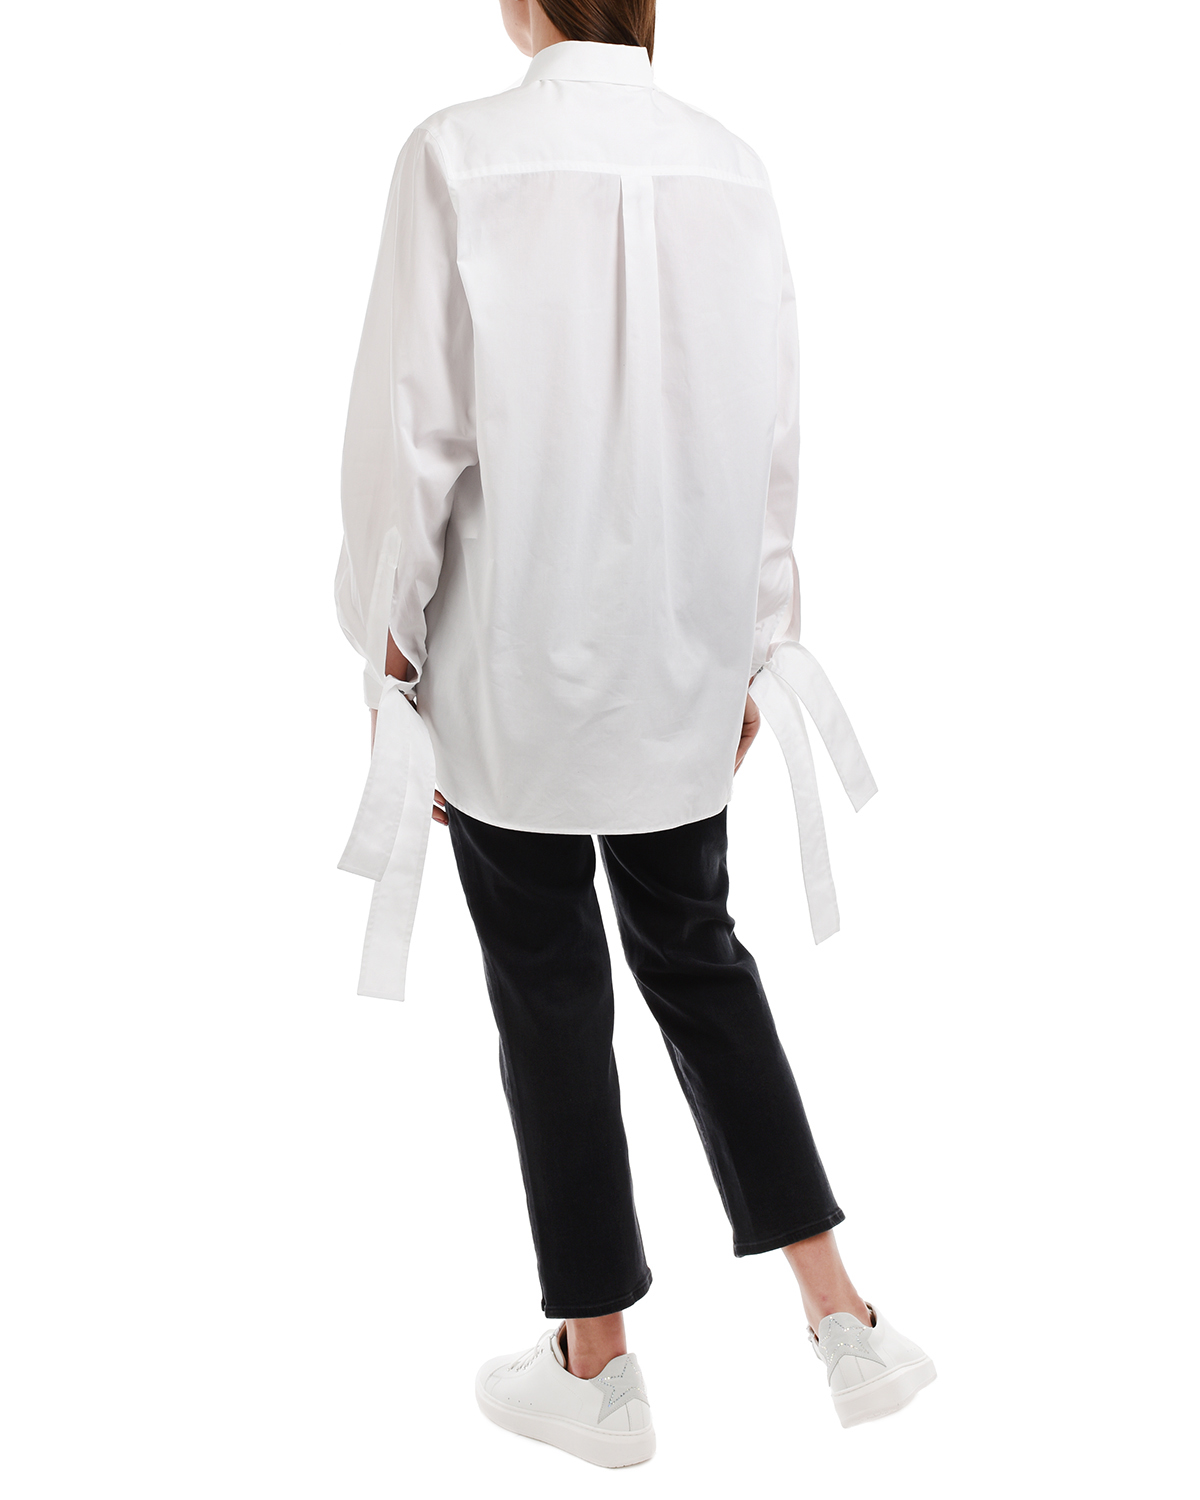 Удлиненная белая рубашка No. 21, размер 42, цвет белый - фото 5